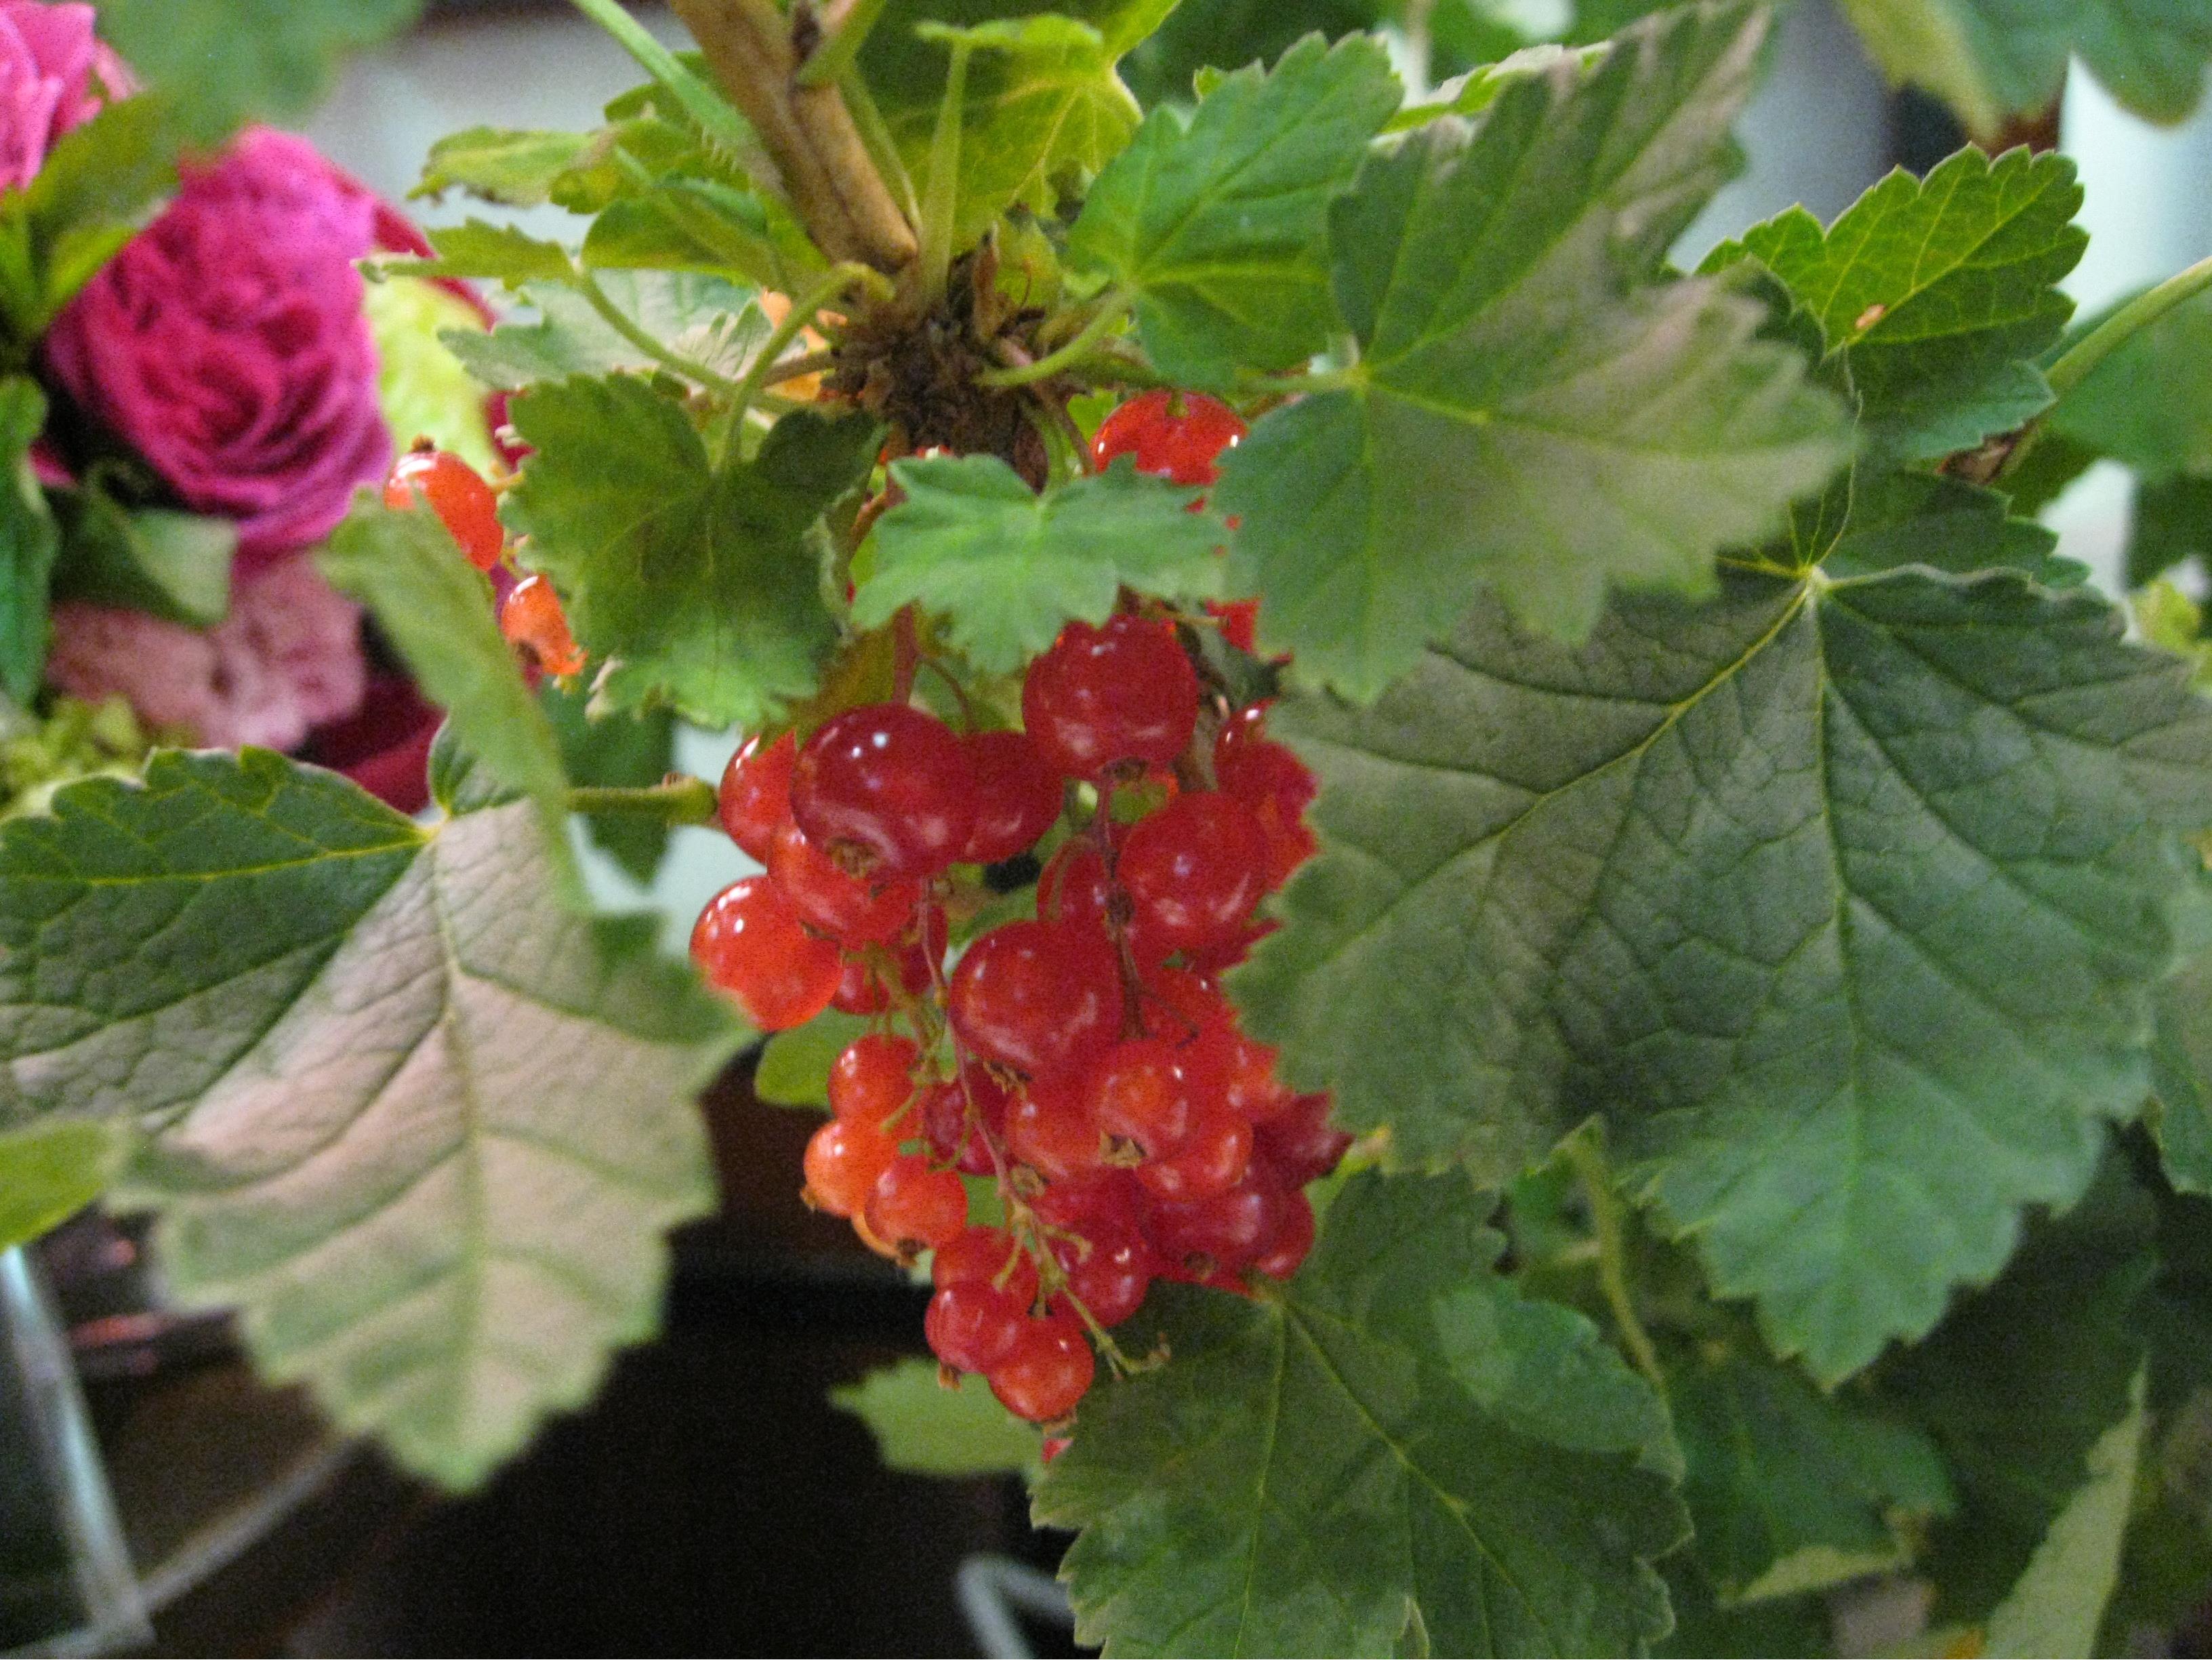 عرضه انگور فرنگی (Ribes) در گلفروشی های ژاپن به عنوان یک بوته گلدانی میوه دار